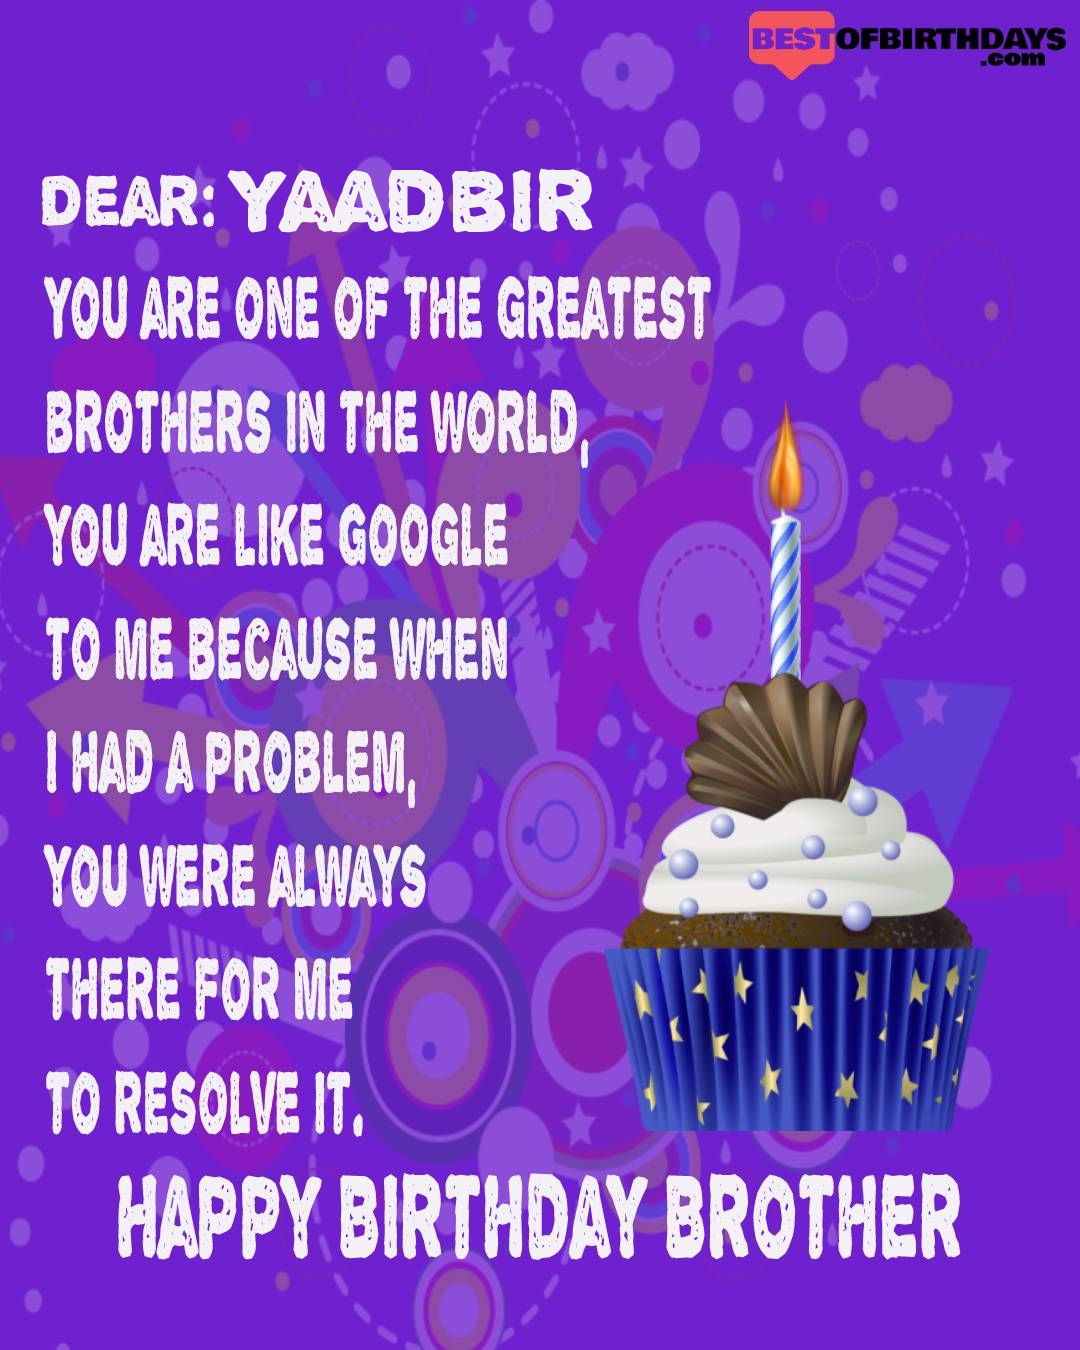 Happy birthday yaadbir bhai brother bro